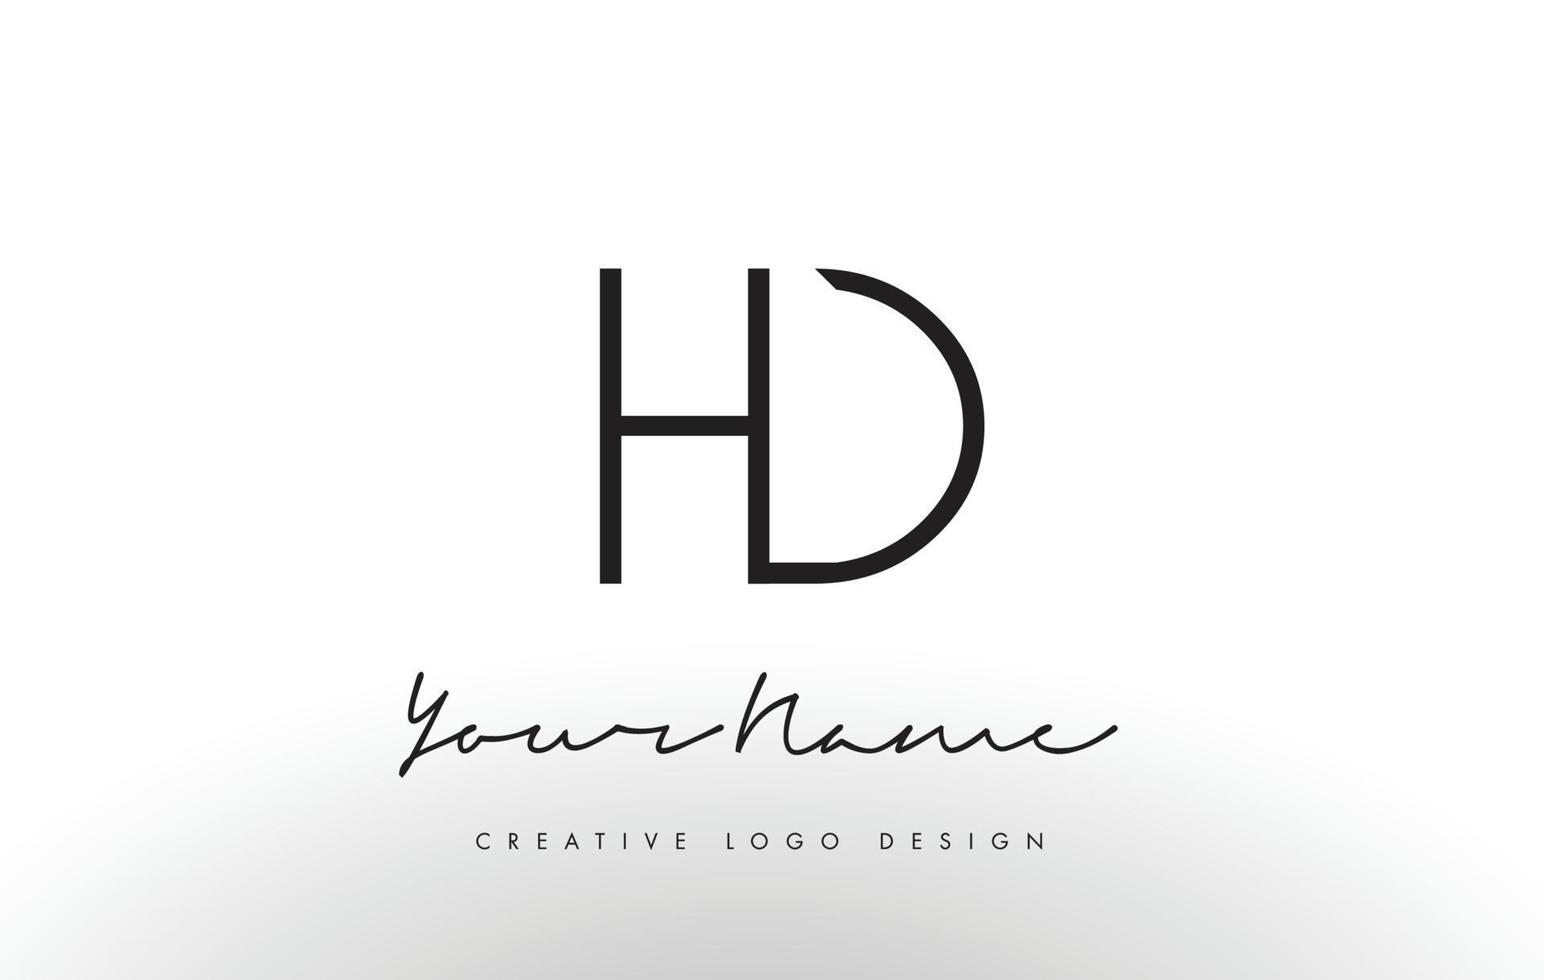 diseño de logotipo de letras hd delgado. concepto creativo simple letra negra. vector